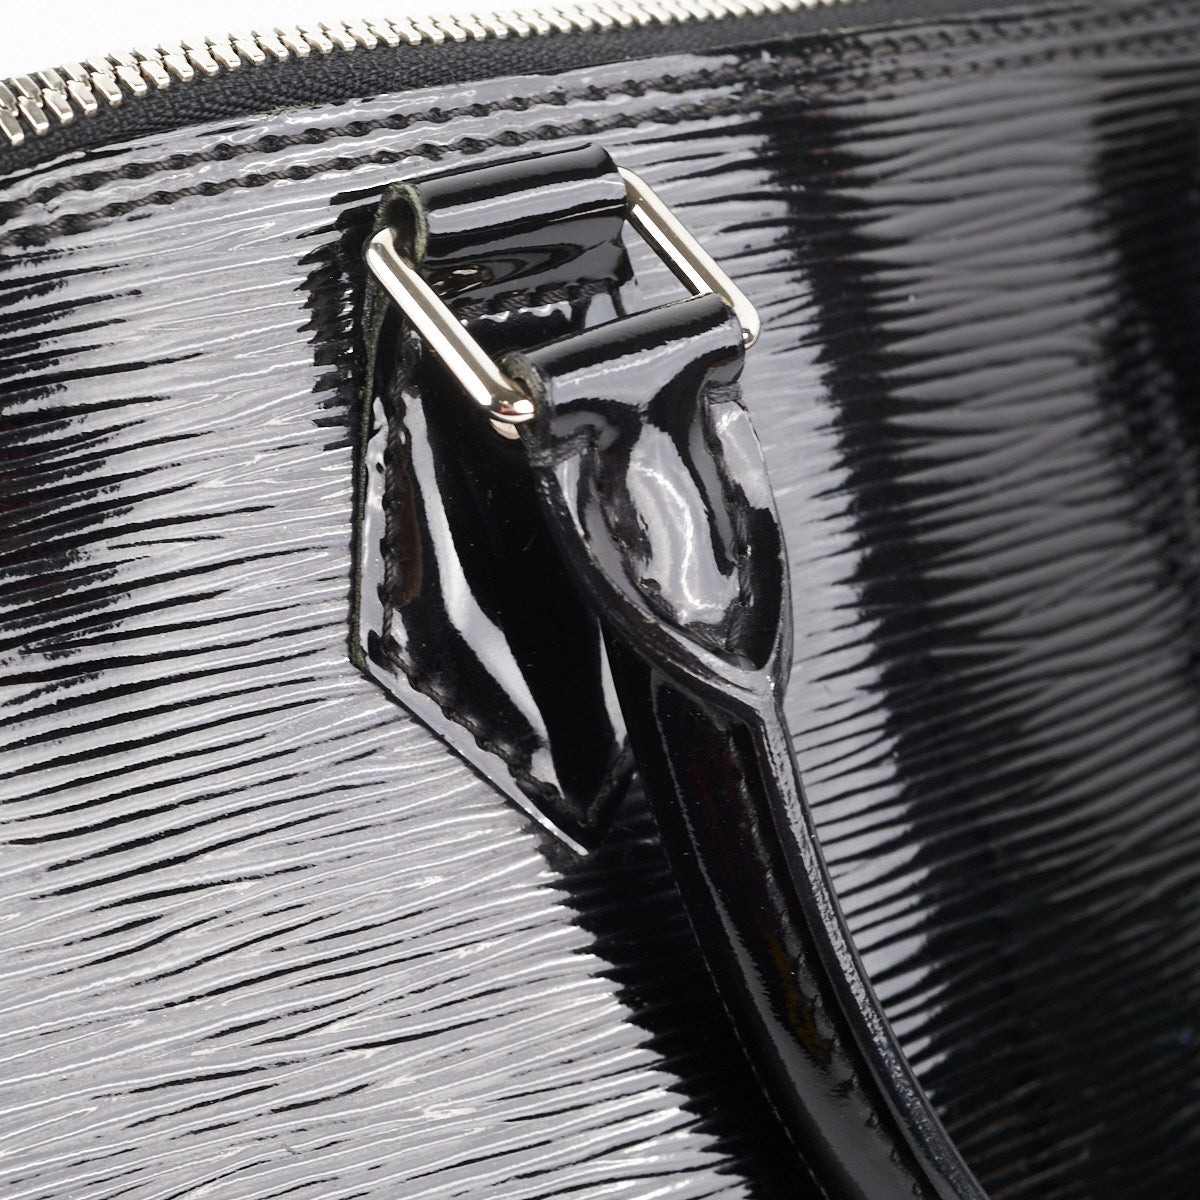 Louis Vuitton M64153 Black Epi Leather Pochette Jour GM (TN3198)